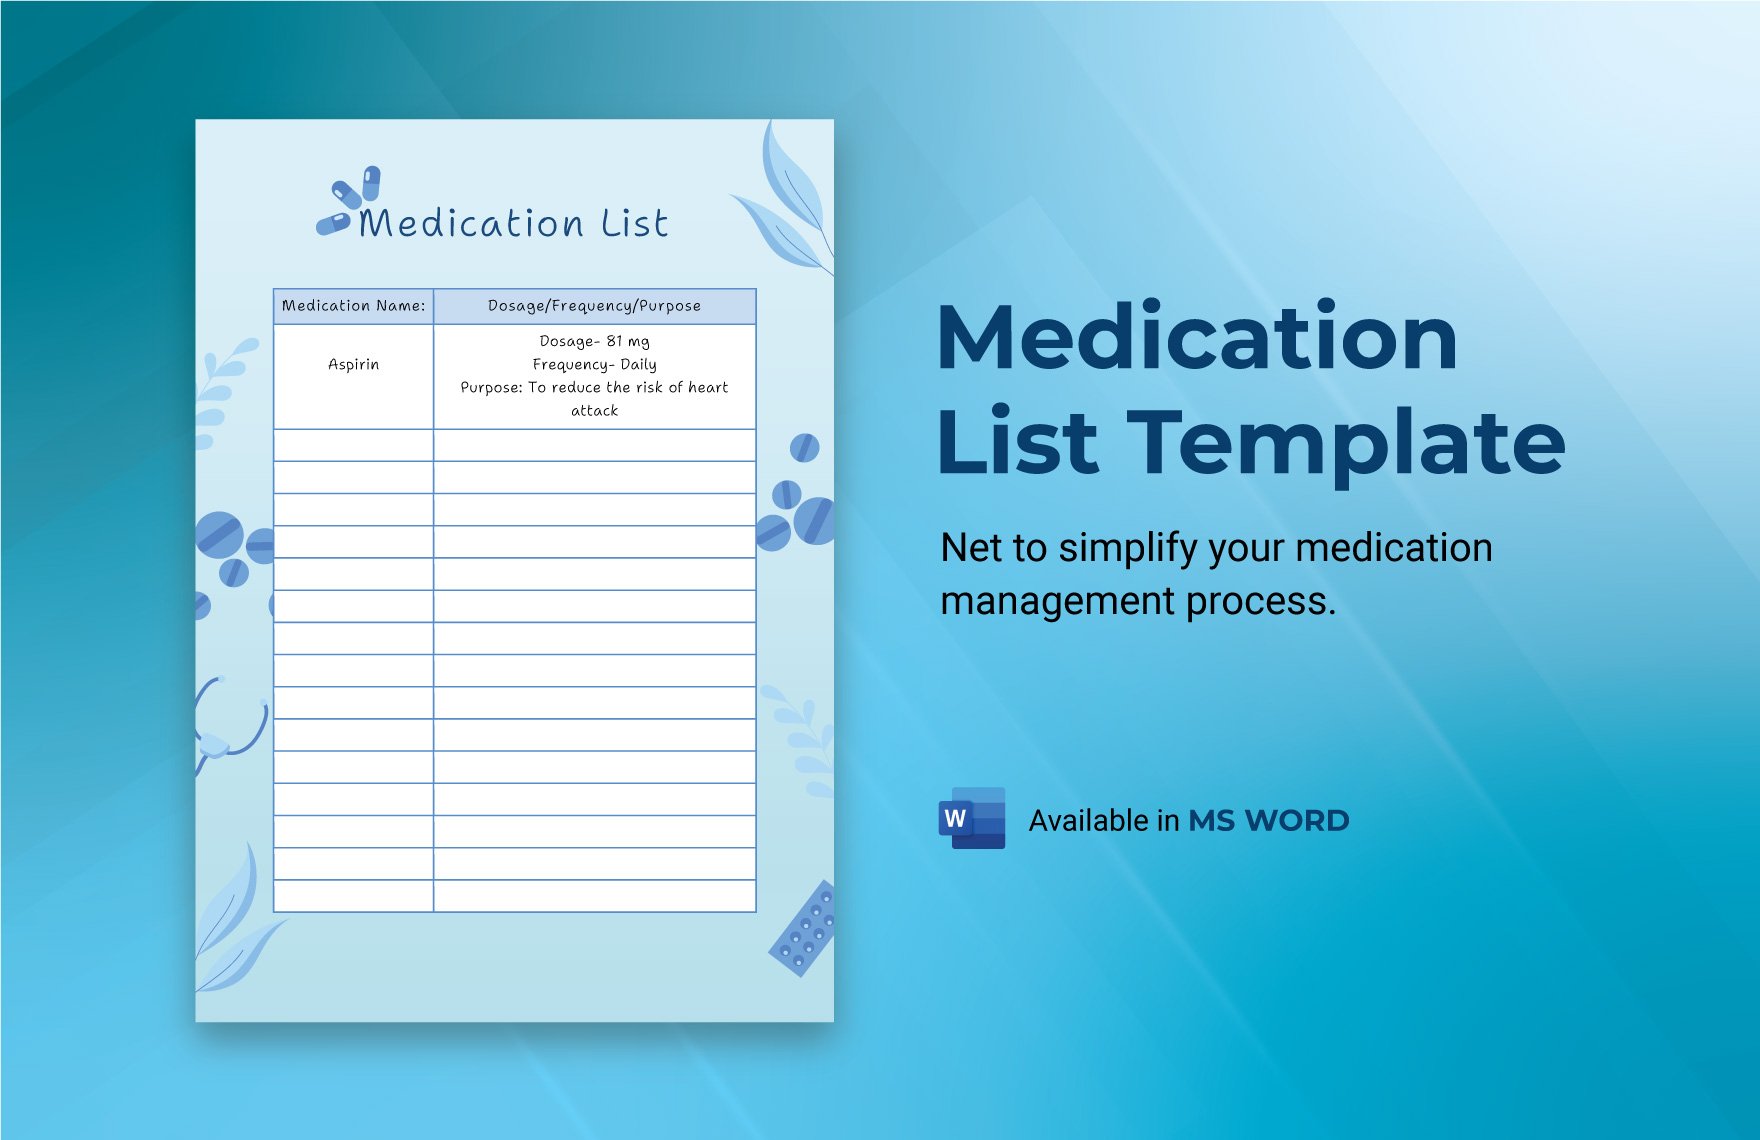 Medication List Template